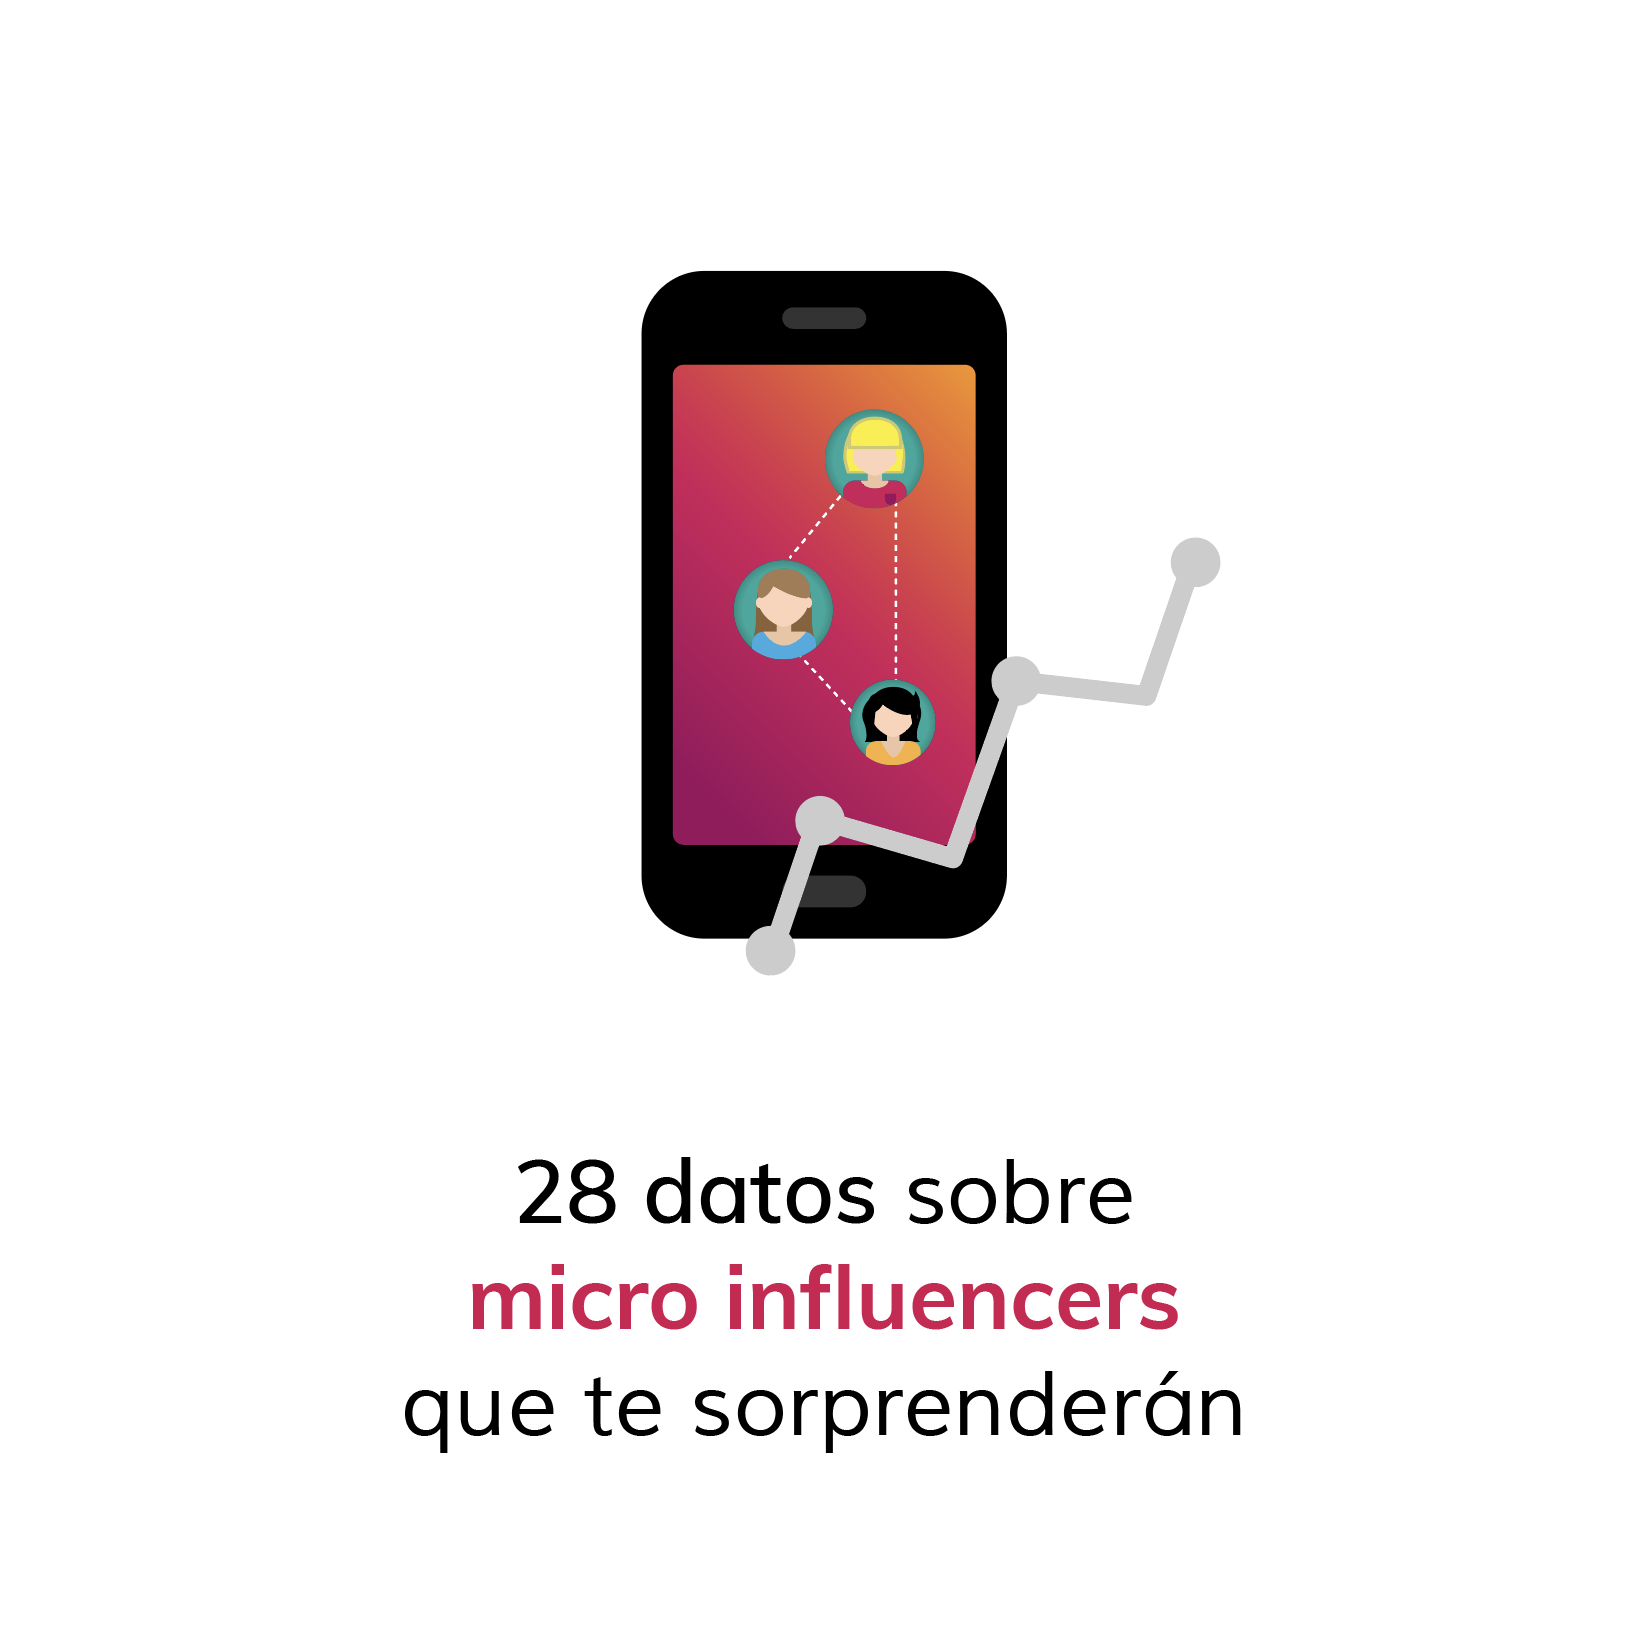 28 datos sobre micro influencers que te sorprenderán